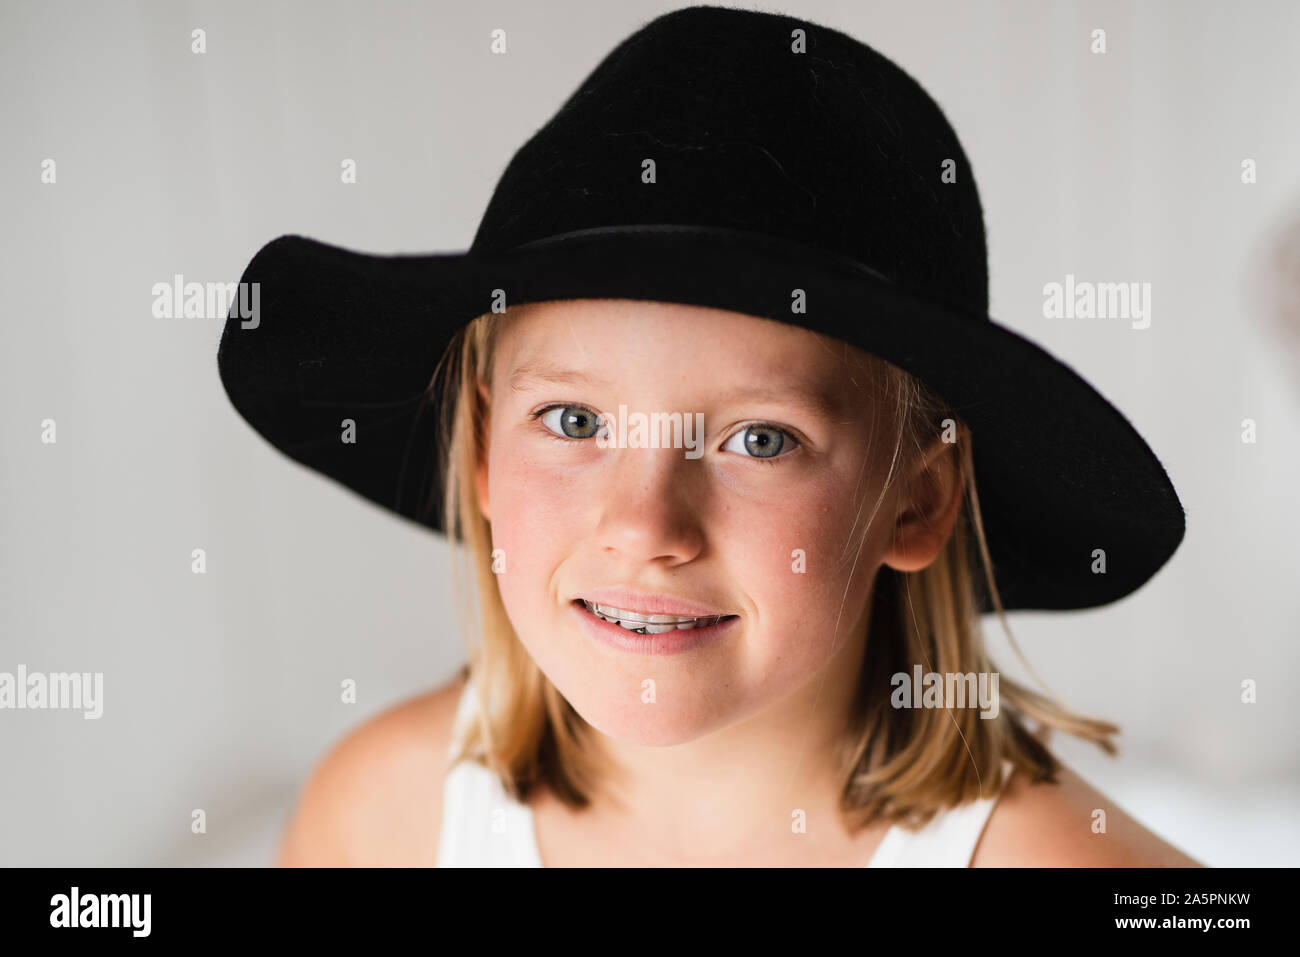 Smiling blonde girl wearing hat Stock Photo